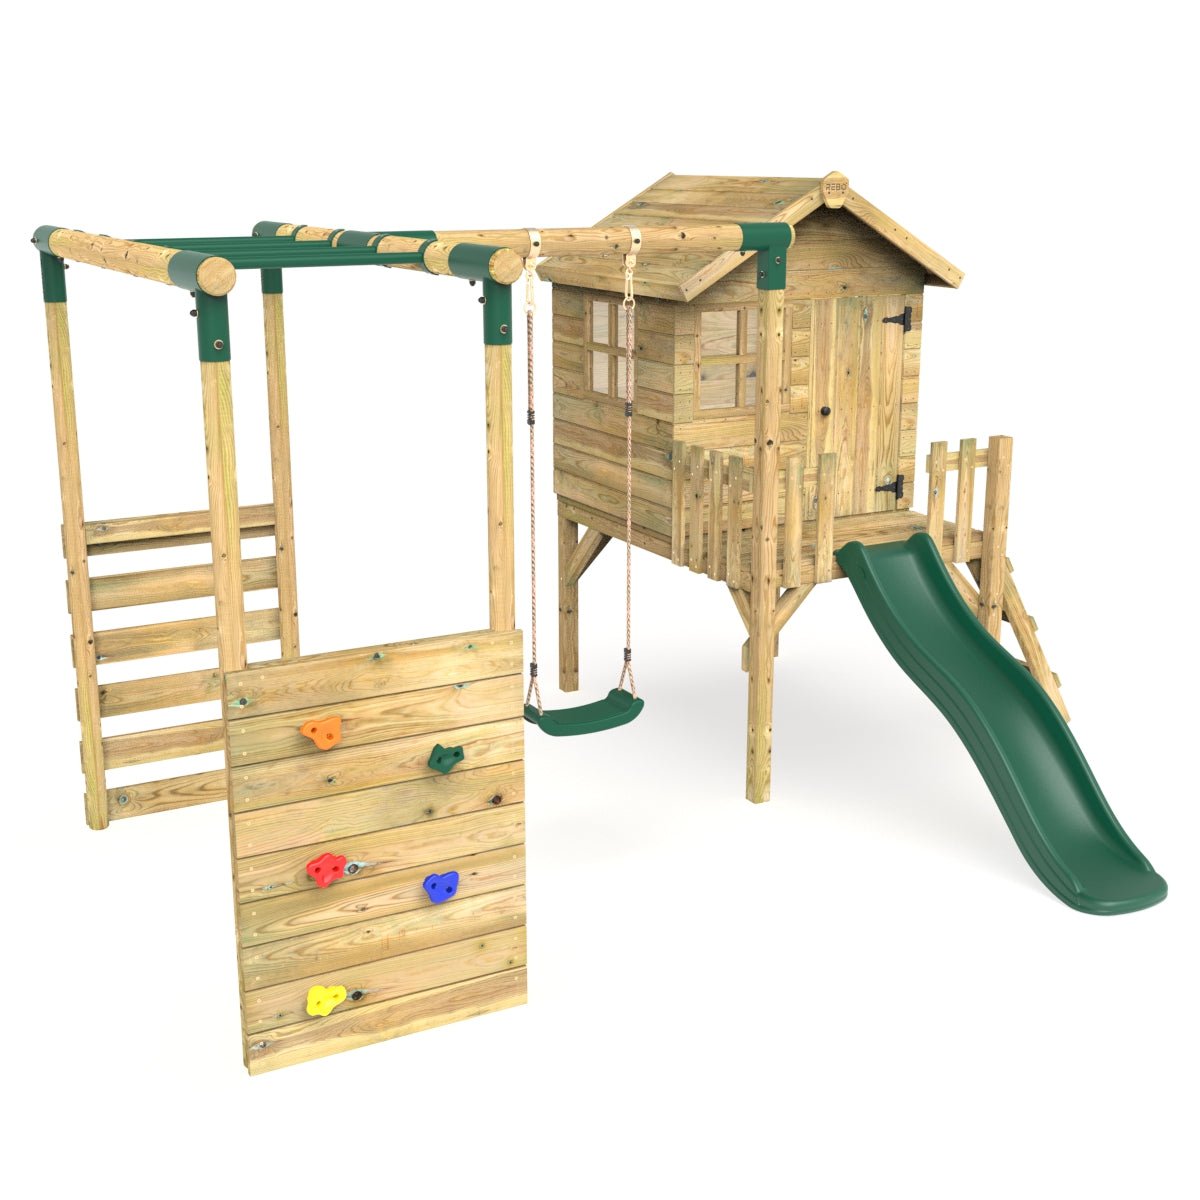 Rebo Orchard 4FT Wooden Playhouse, Swings, Monkey Bars, Deck & 6FT Slide – Solar Green